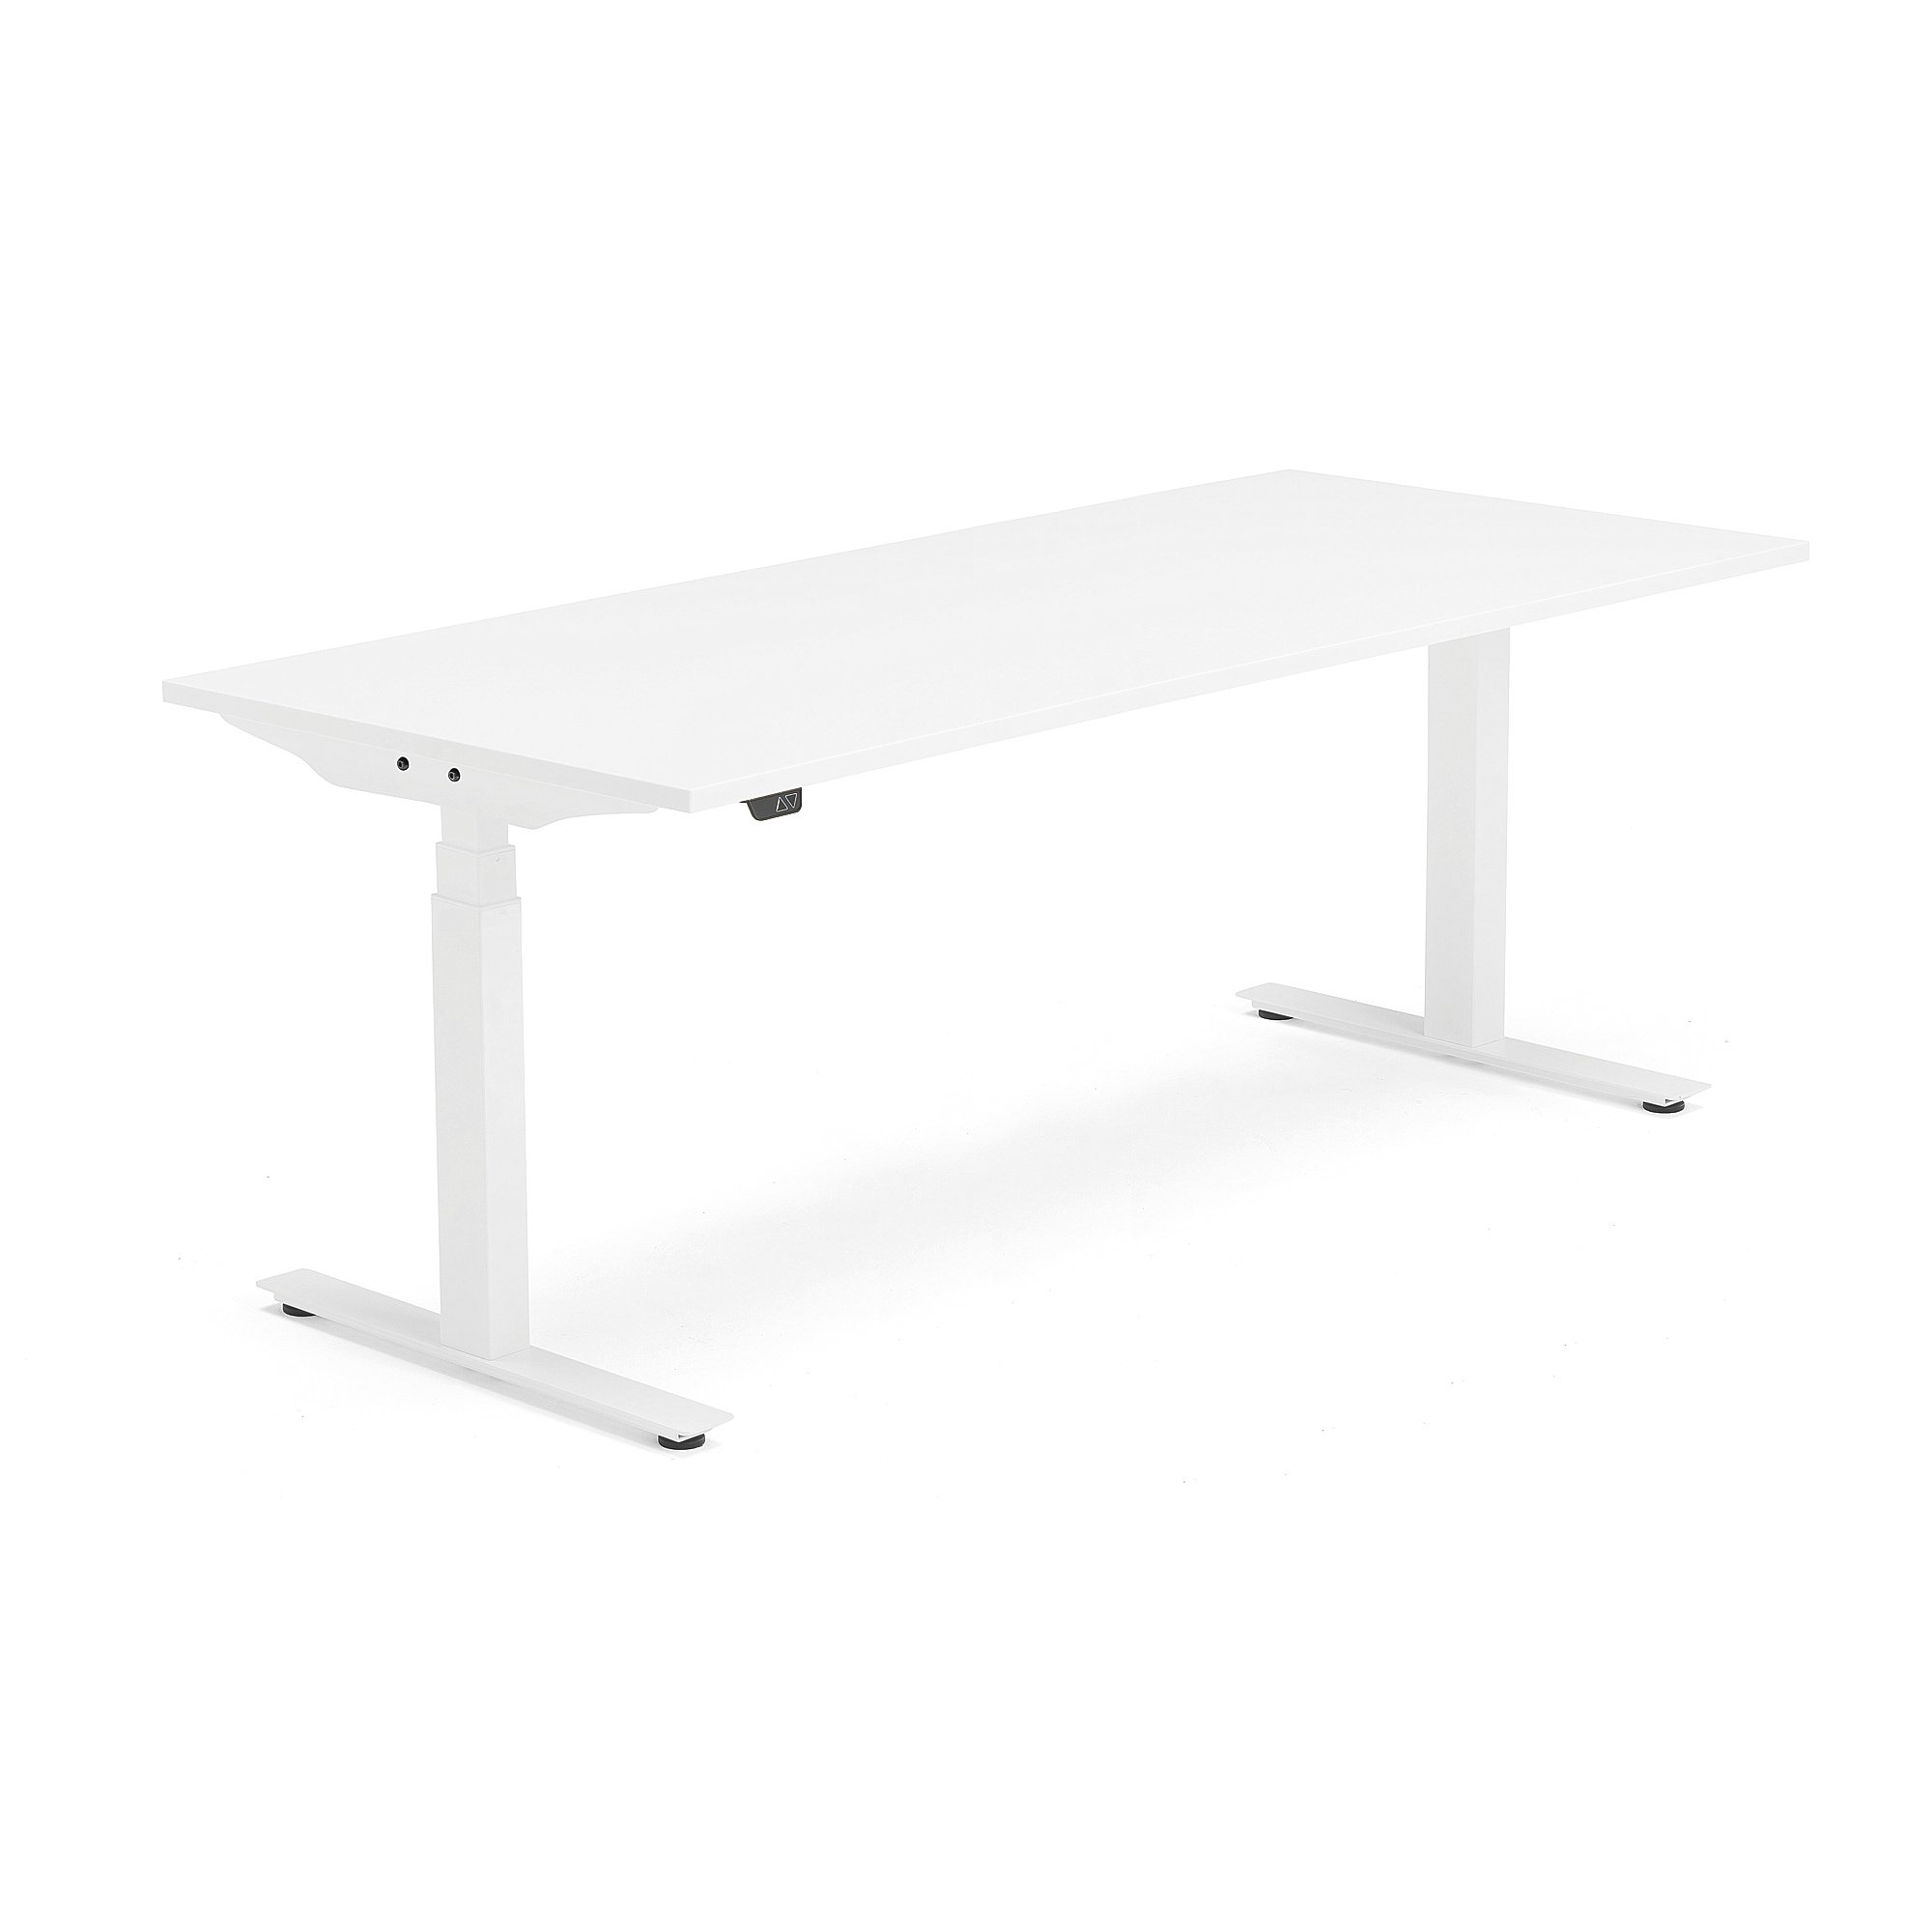 Výškově nastavitelný stůl MODULUS, 1800x800 mm, bílý rám, bílá